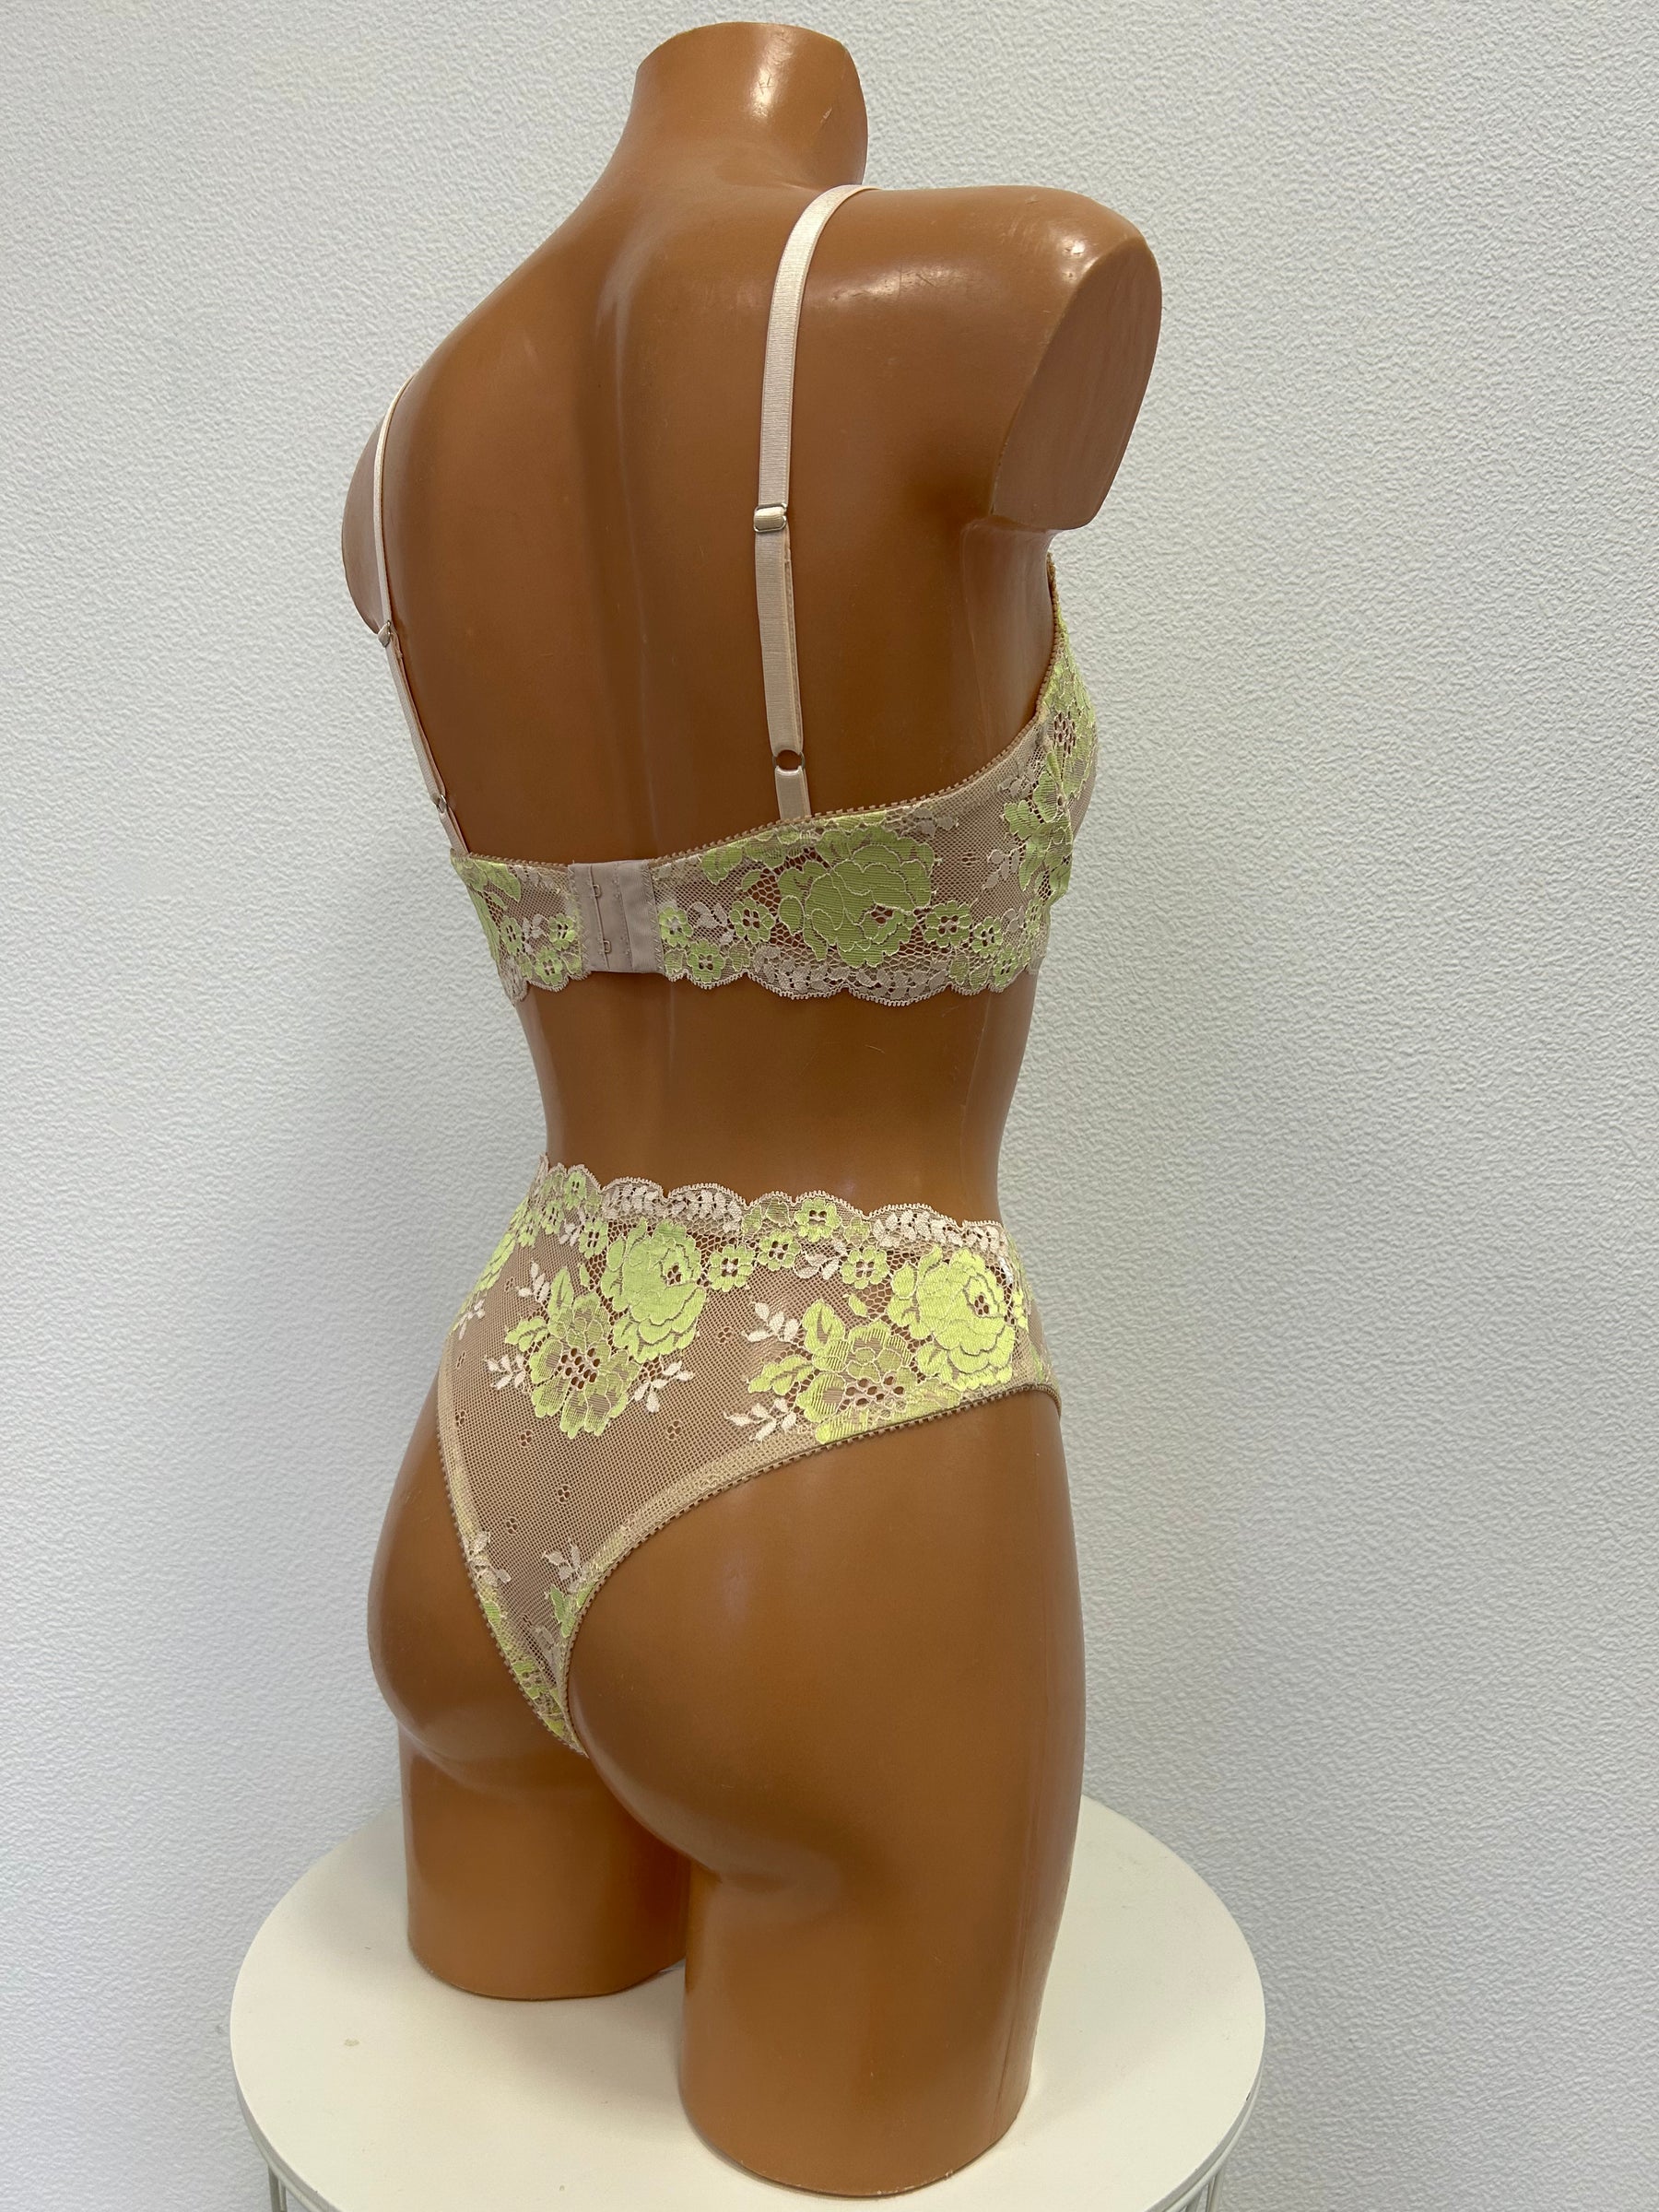 "Summer" lace lingerie set